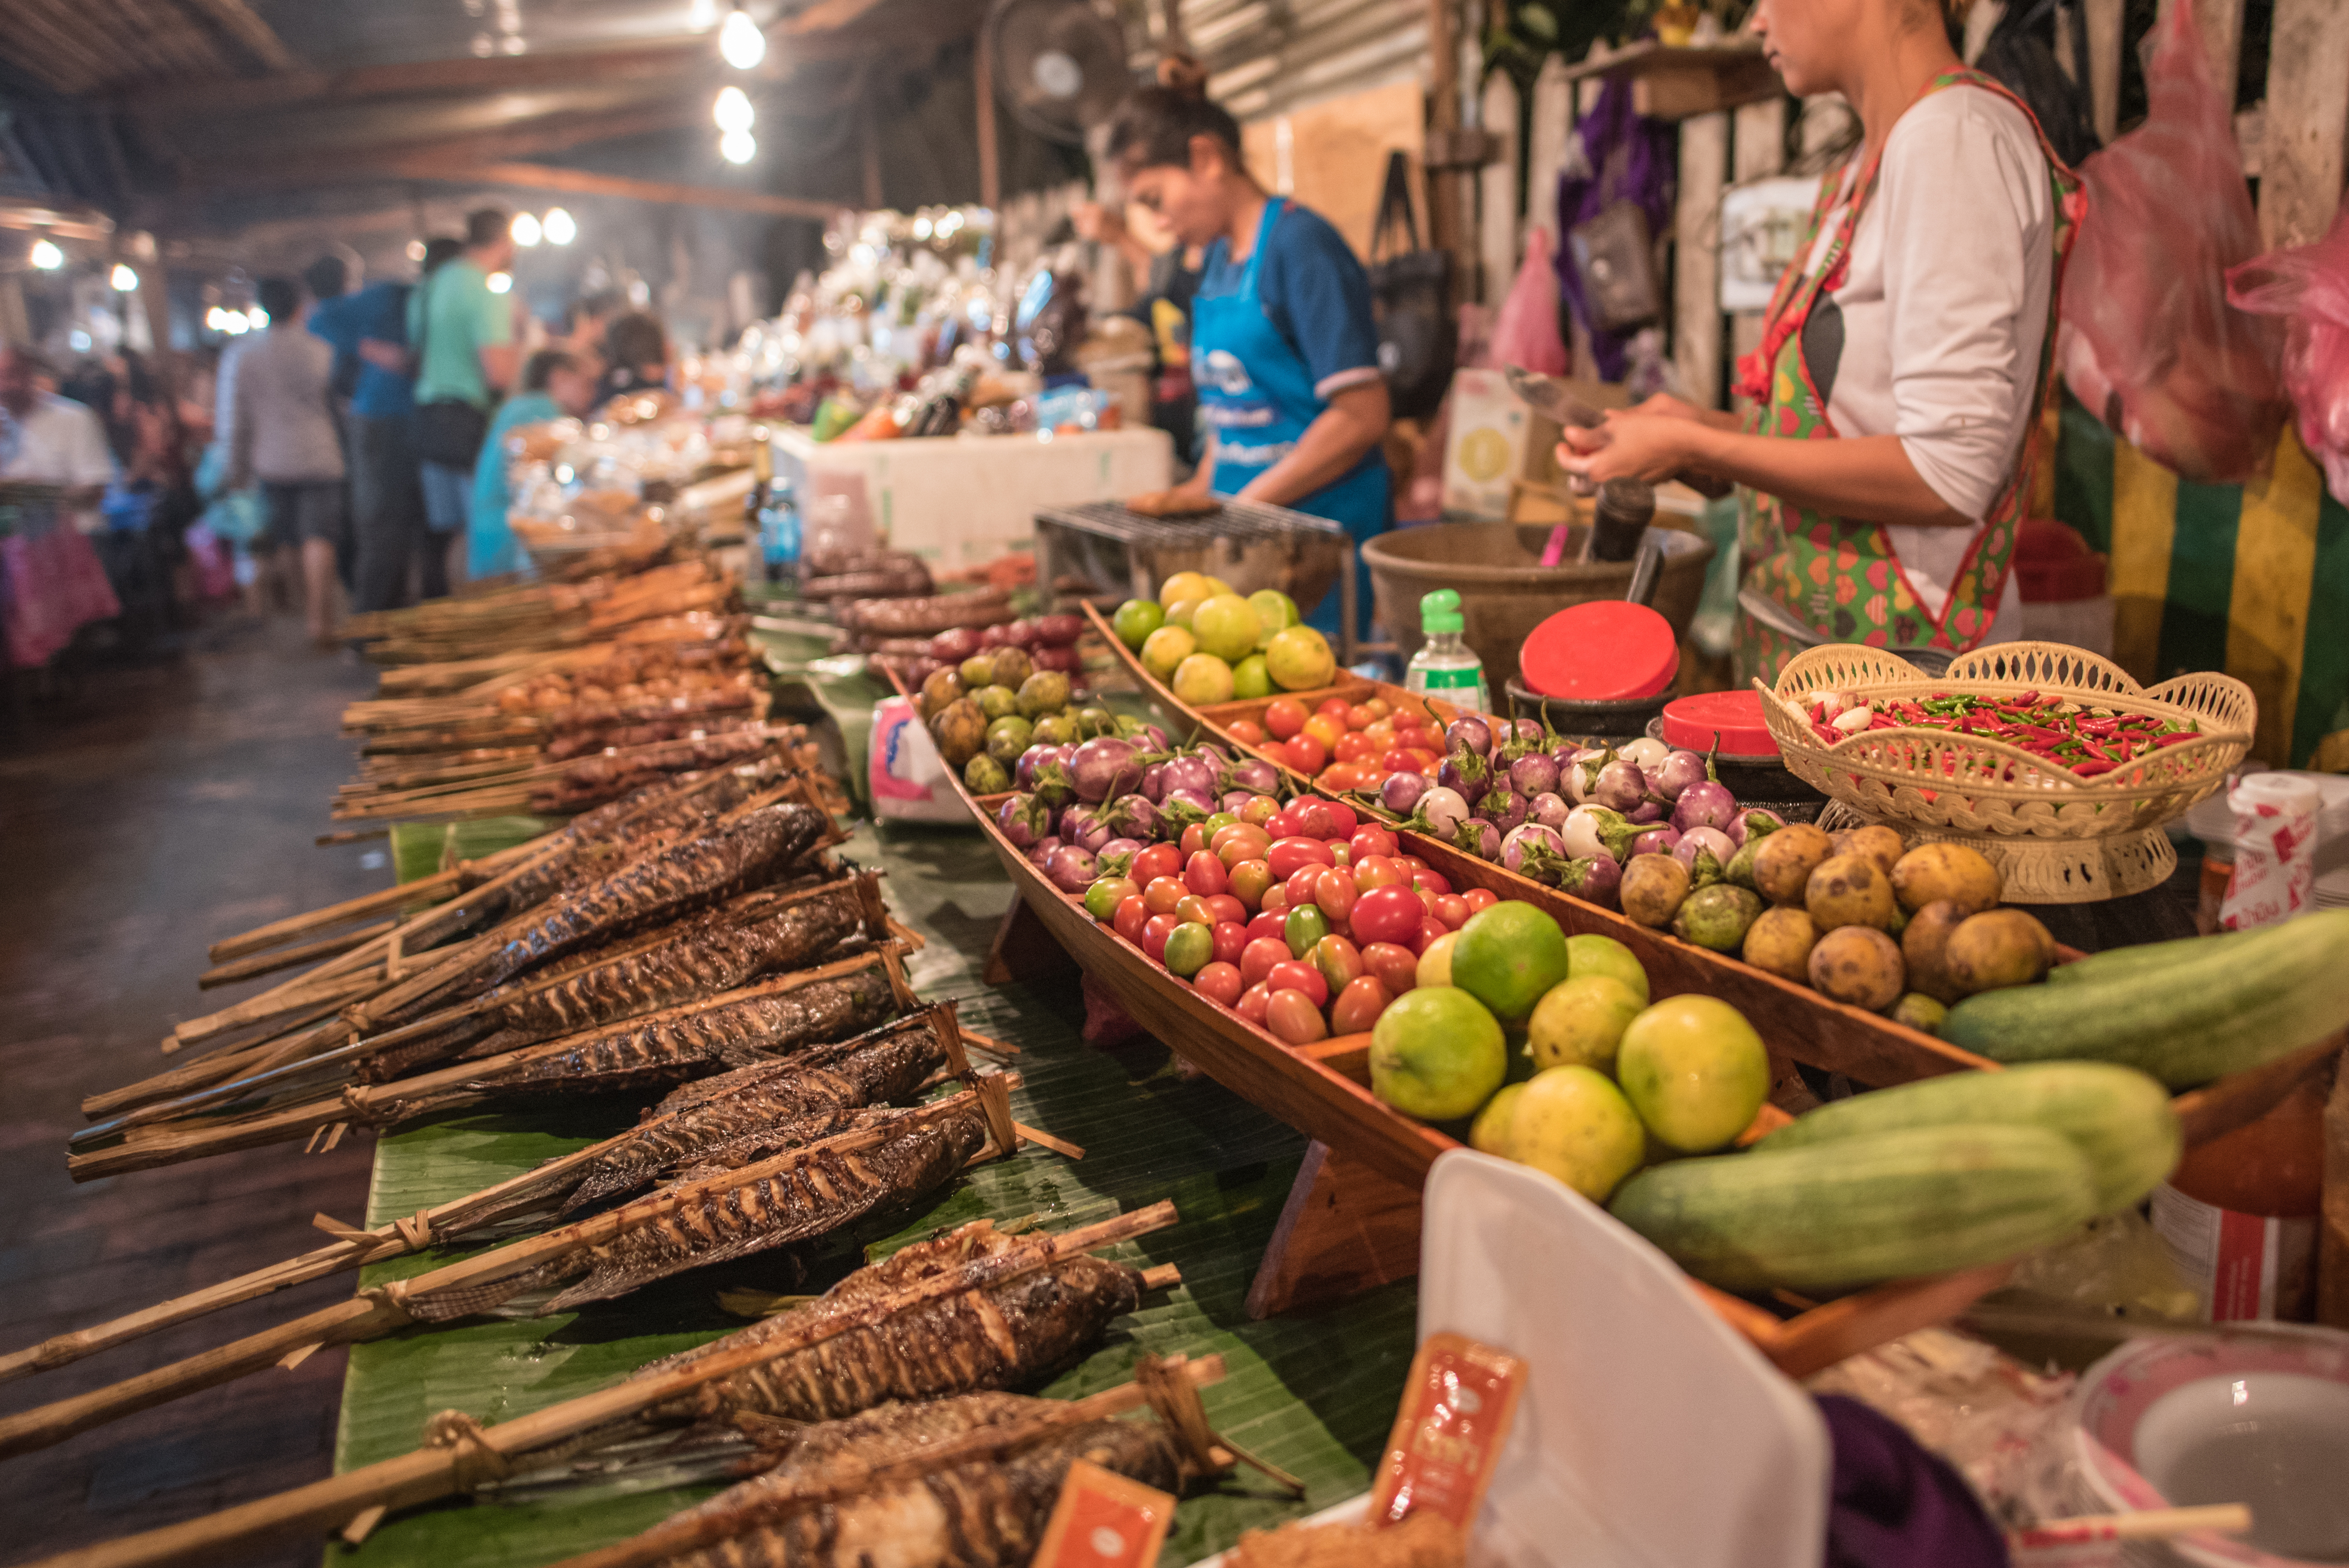 ระเบียงผลไม้ภาคตะวันออก : แนวทางยกระดับส่งออกผลไม้ไทย